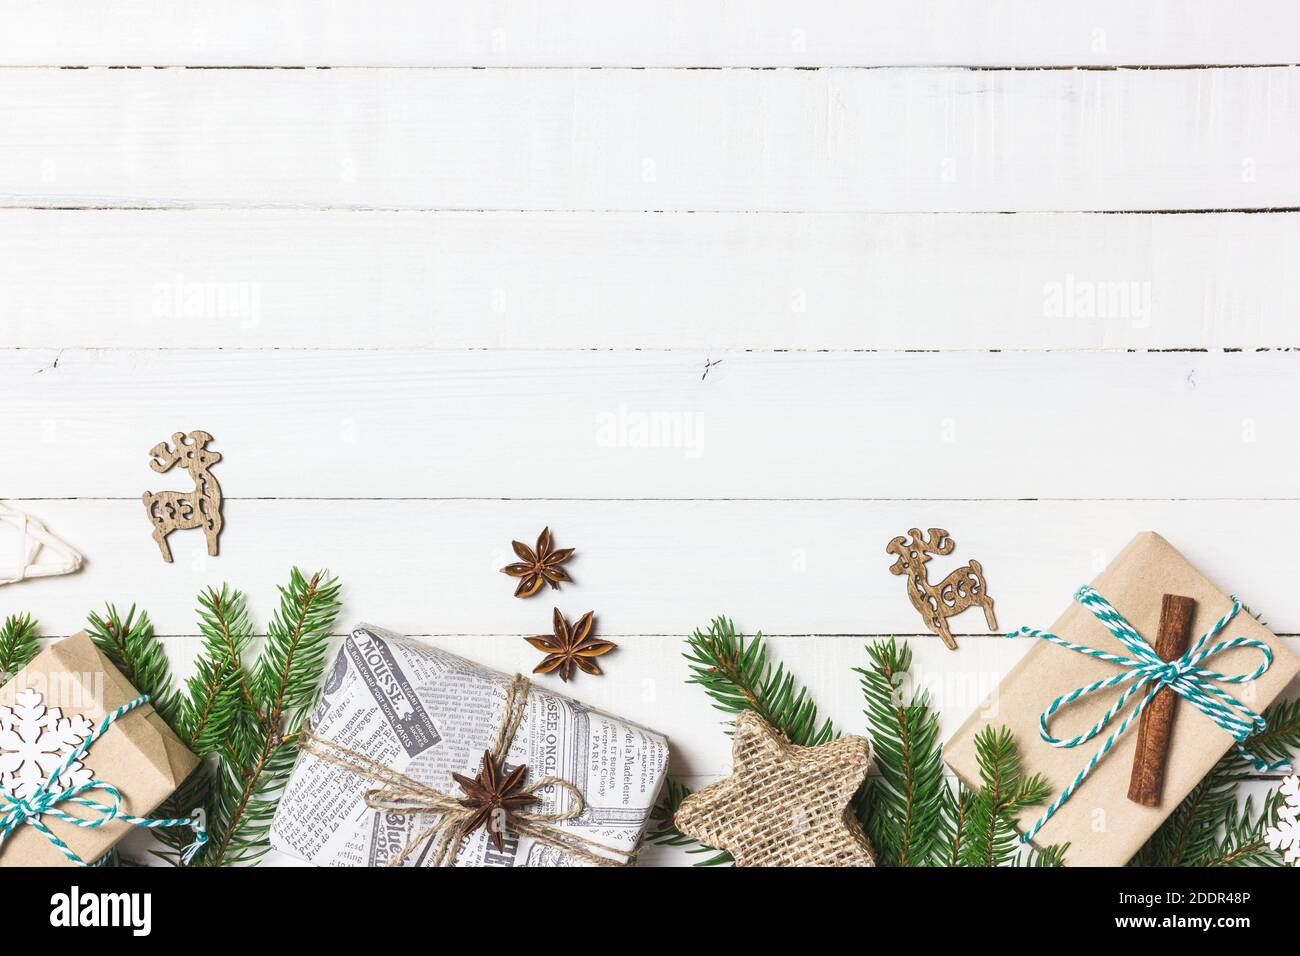 Composition de Noël ou d'hiver. Cadeaux de Noël, branches de sapin et ornements sur fond blanc en bois. Flat lay, vue de dessus, espace de copie. Banque D'Images